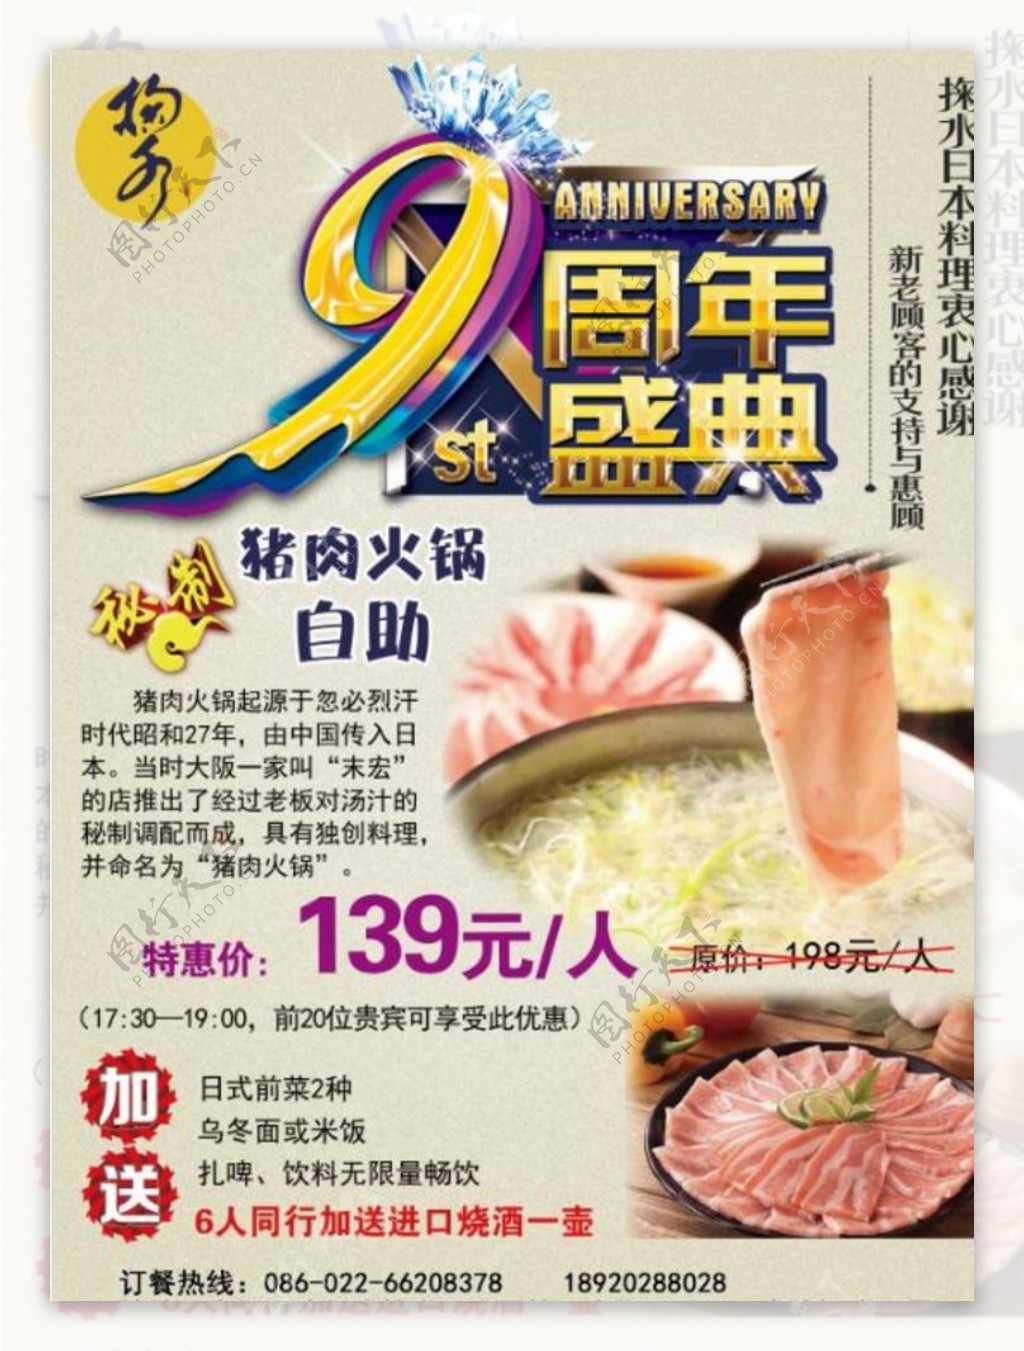 9周年盛典猪肉火锅自助特价